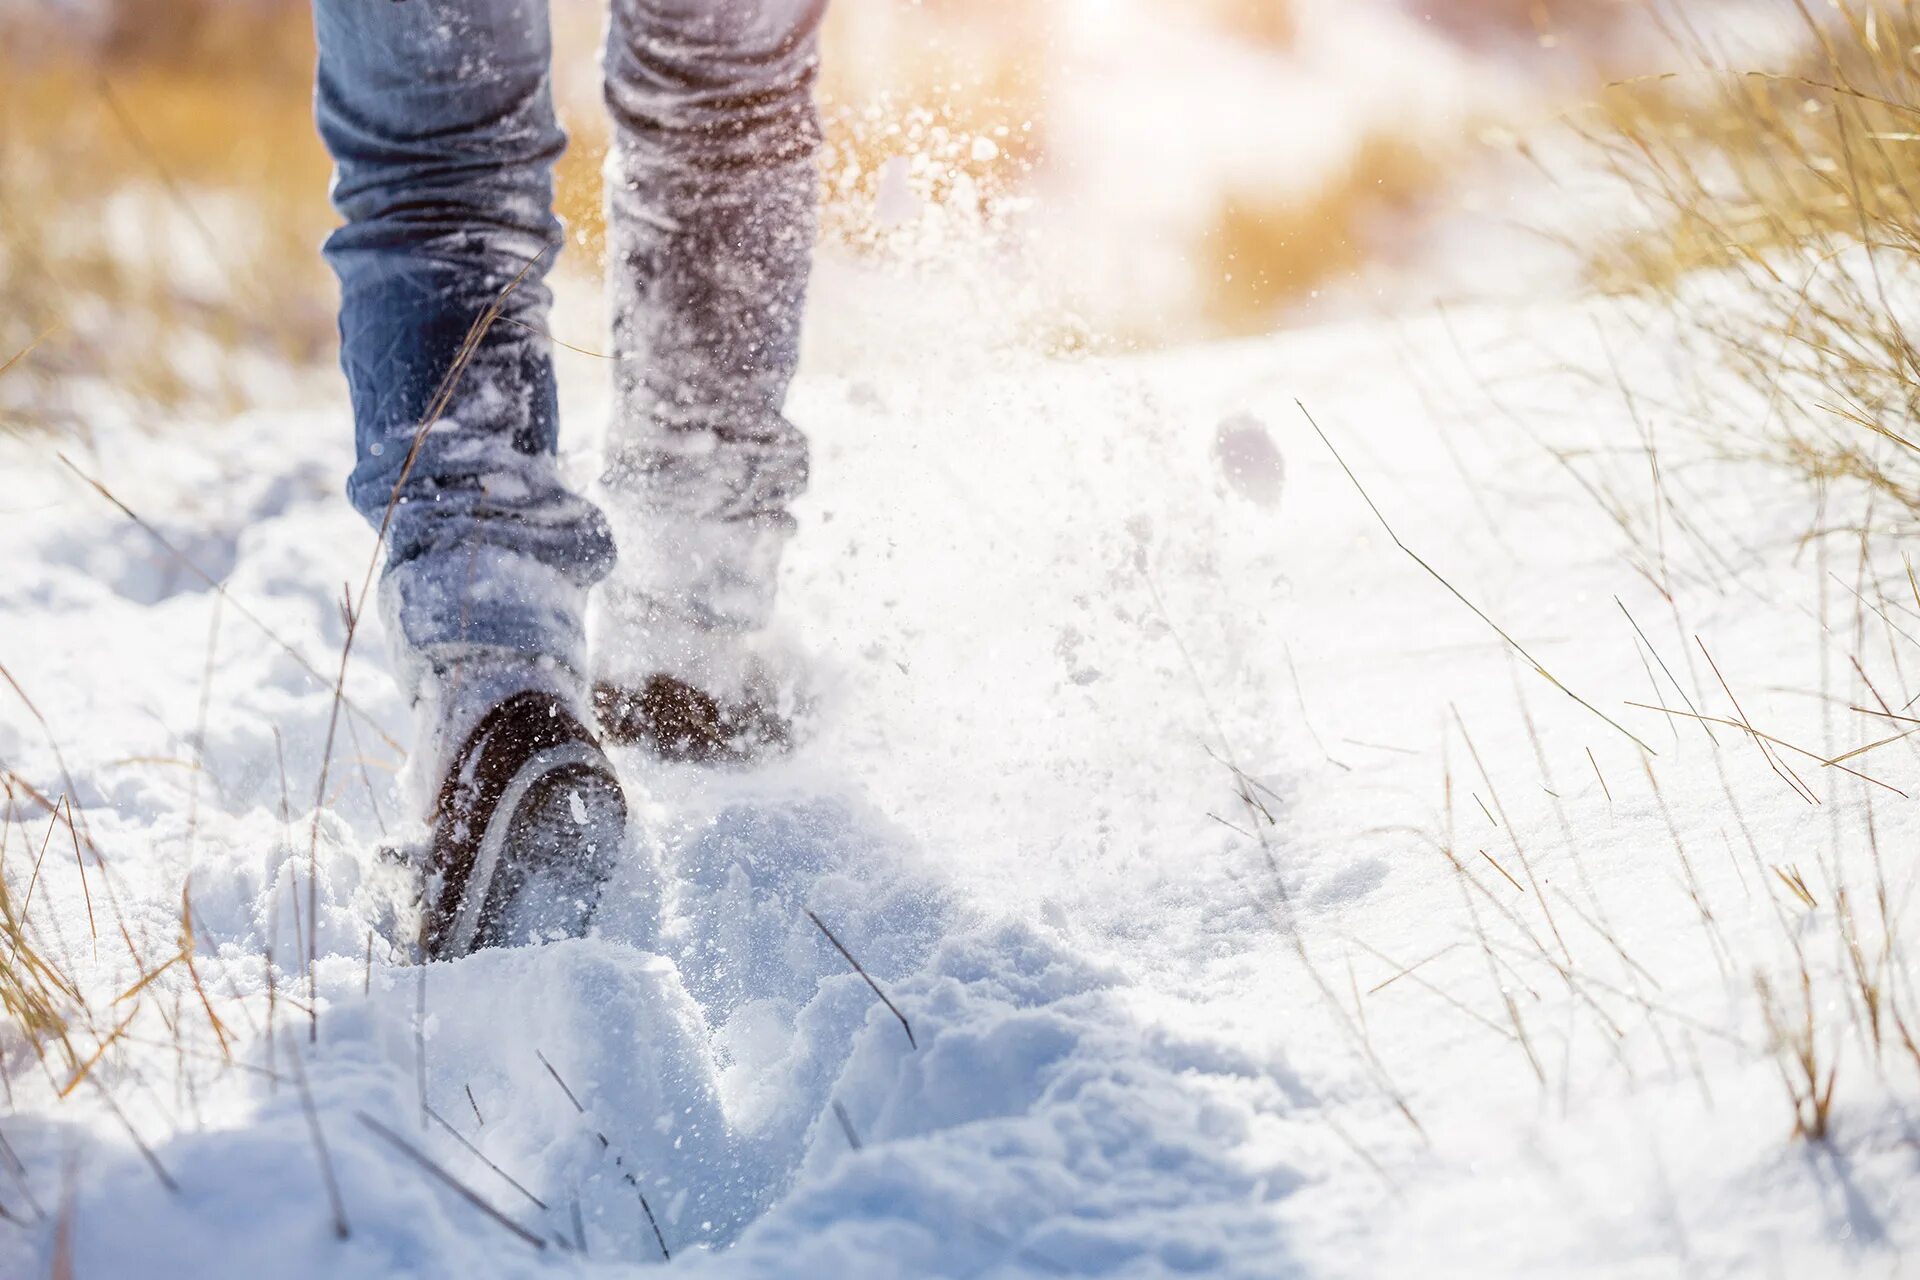 Шаги по снегу. Зимние шаги. Заснеженные ботинки. Иду по снегу.